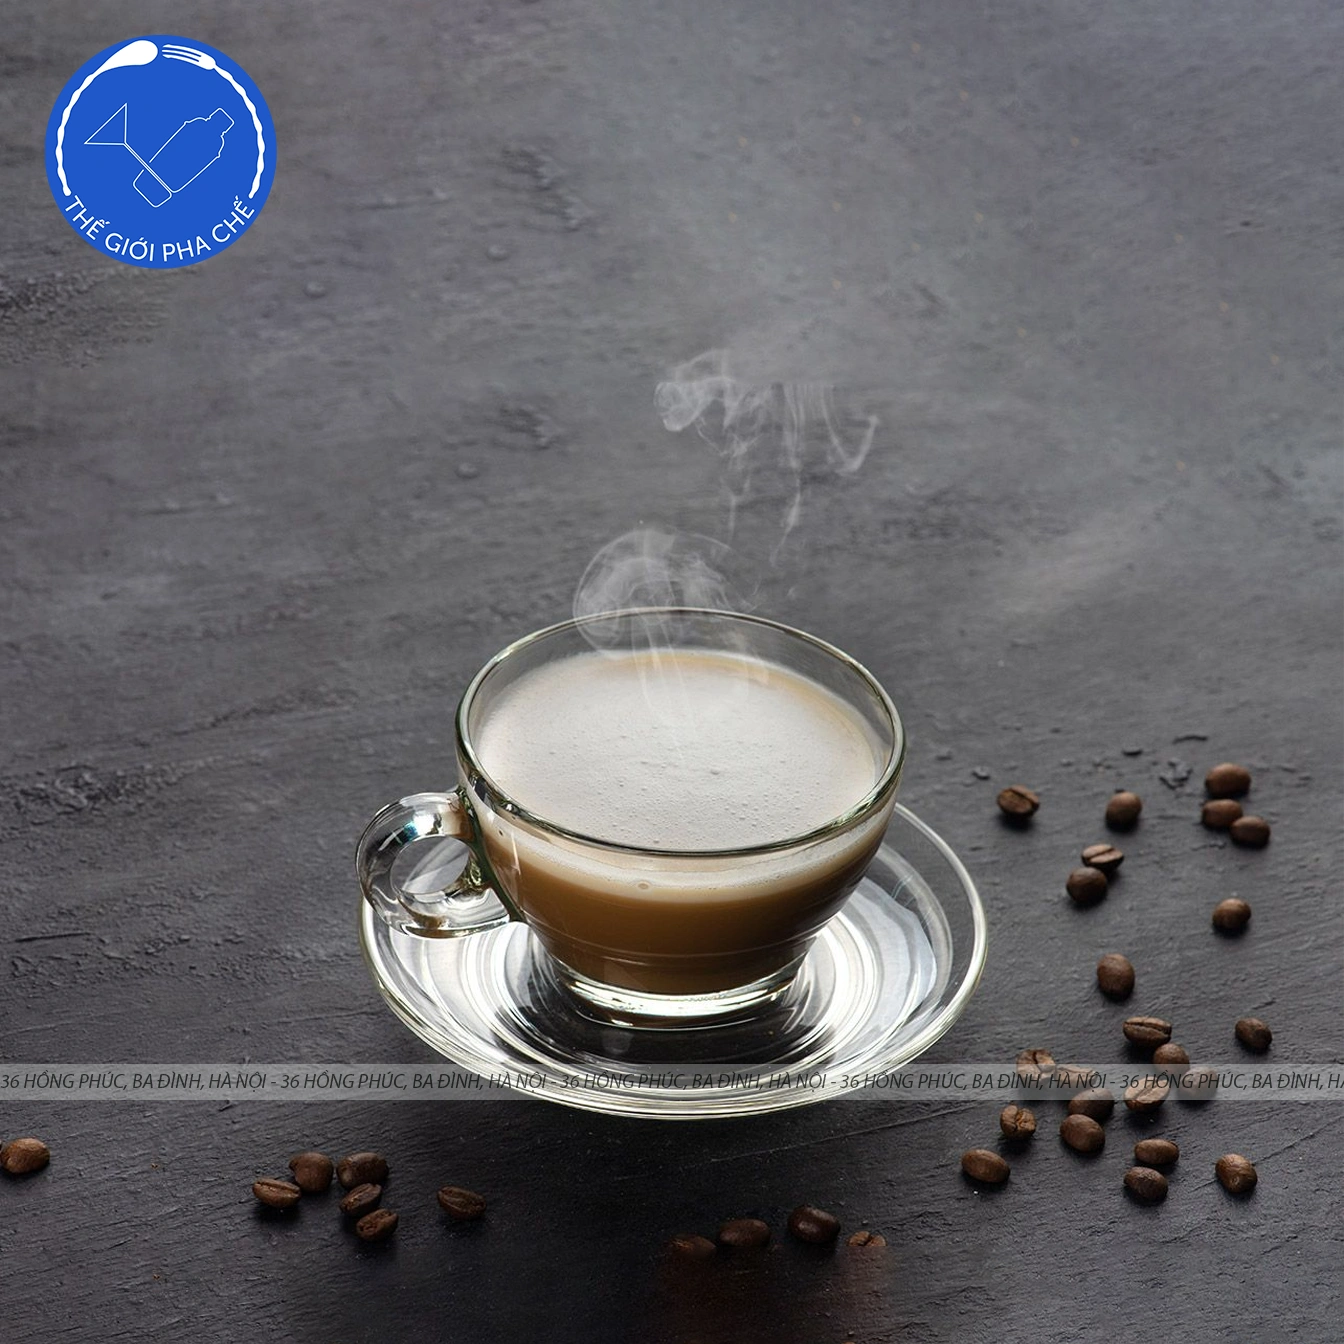 Ly thuỷ tinh Ocean Caffe Latte (Bộ 6c kèm đĩa) 260ml - P02443 - TH Thái Lan